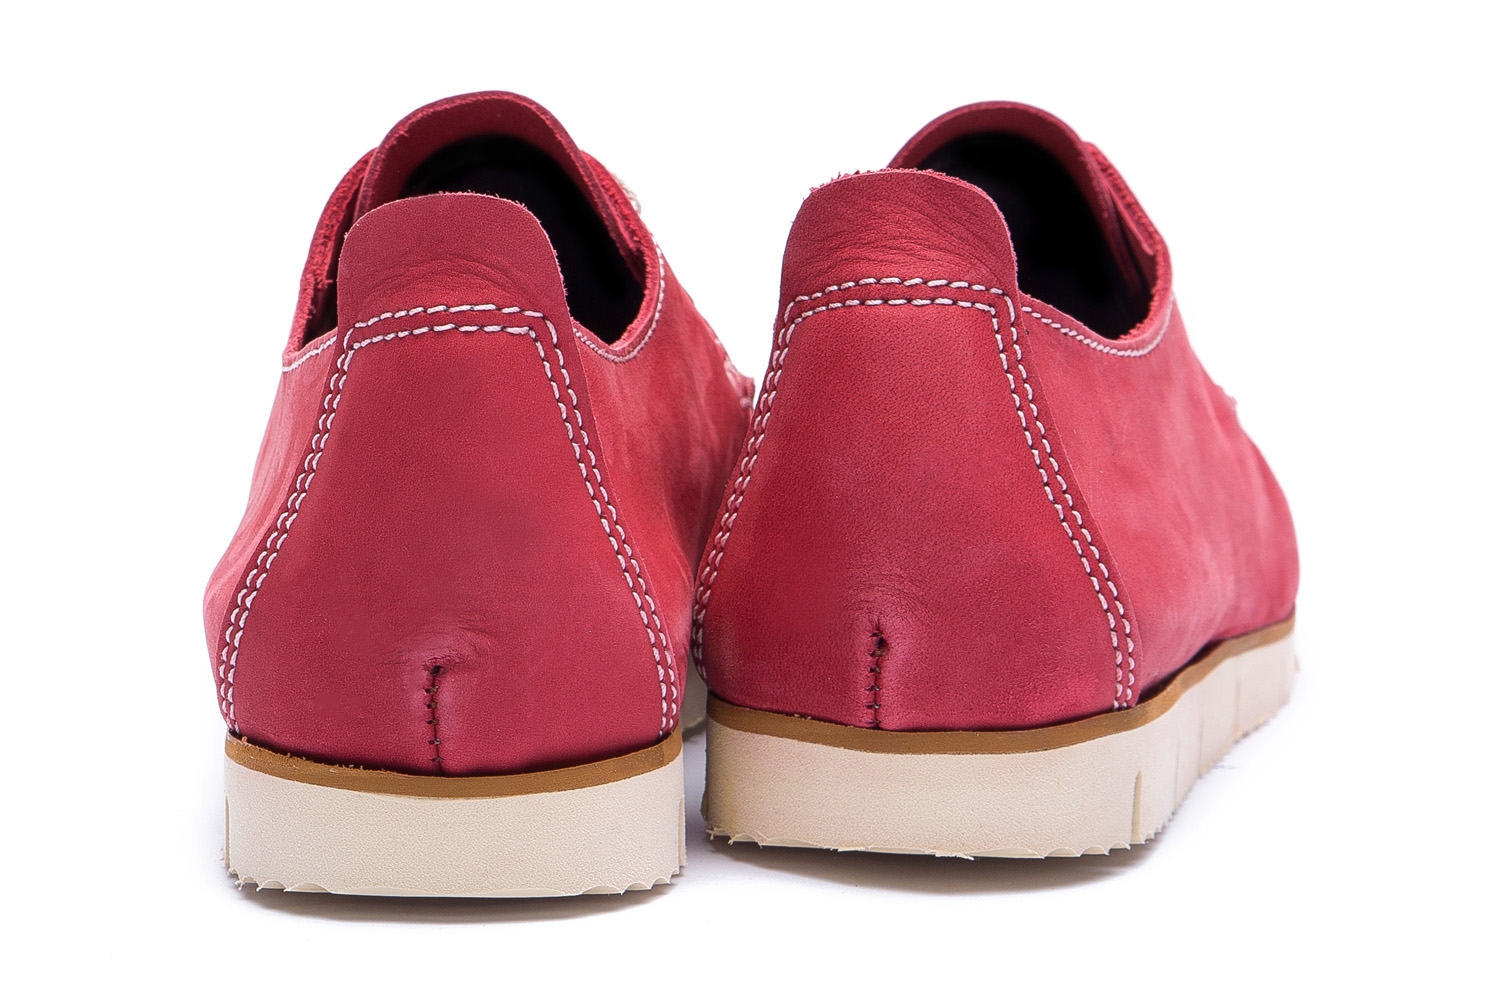 Pantofi rosii piele nabuc 2